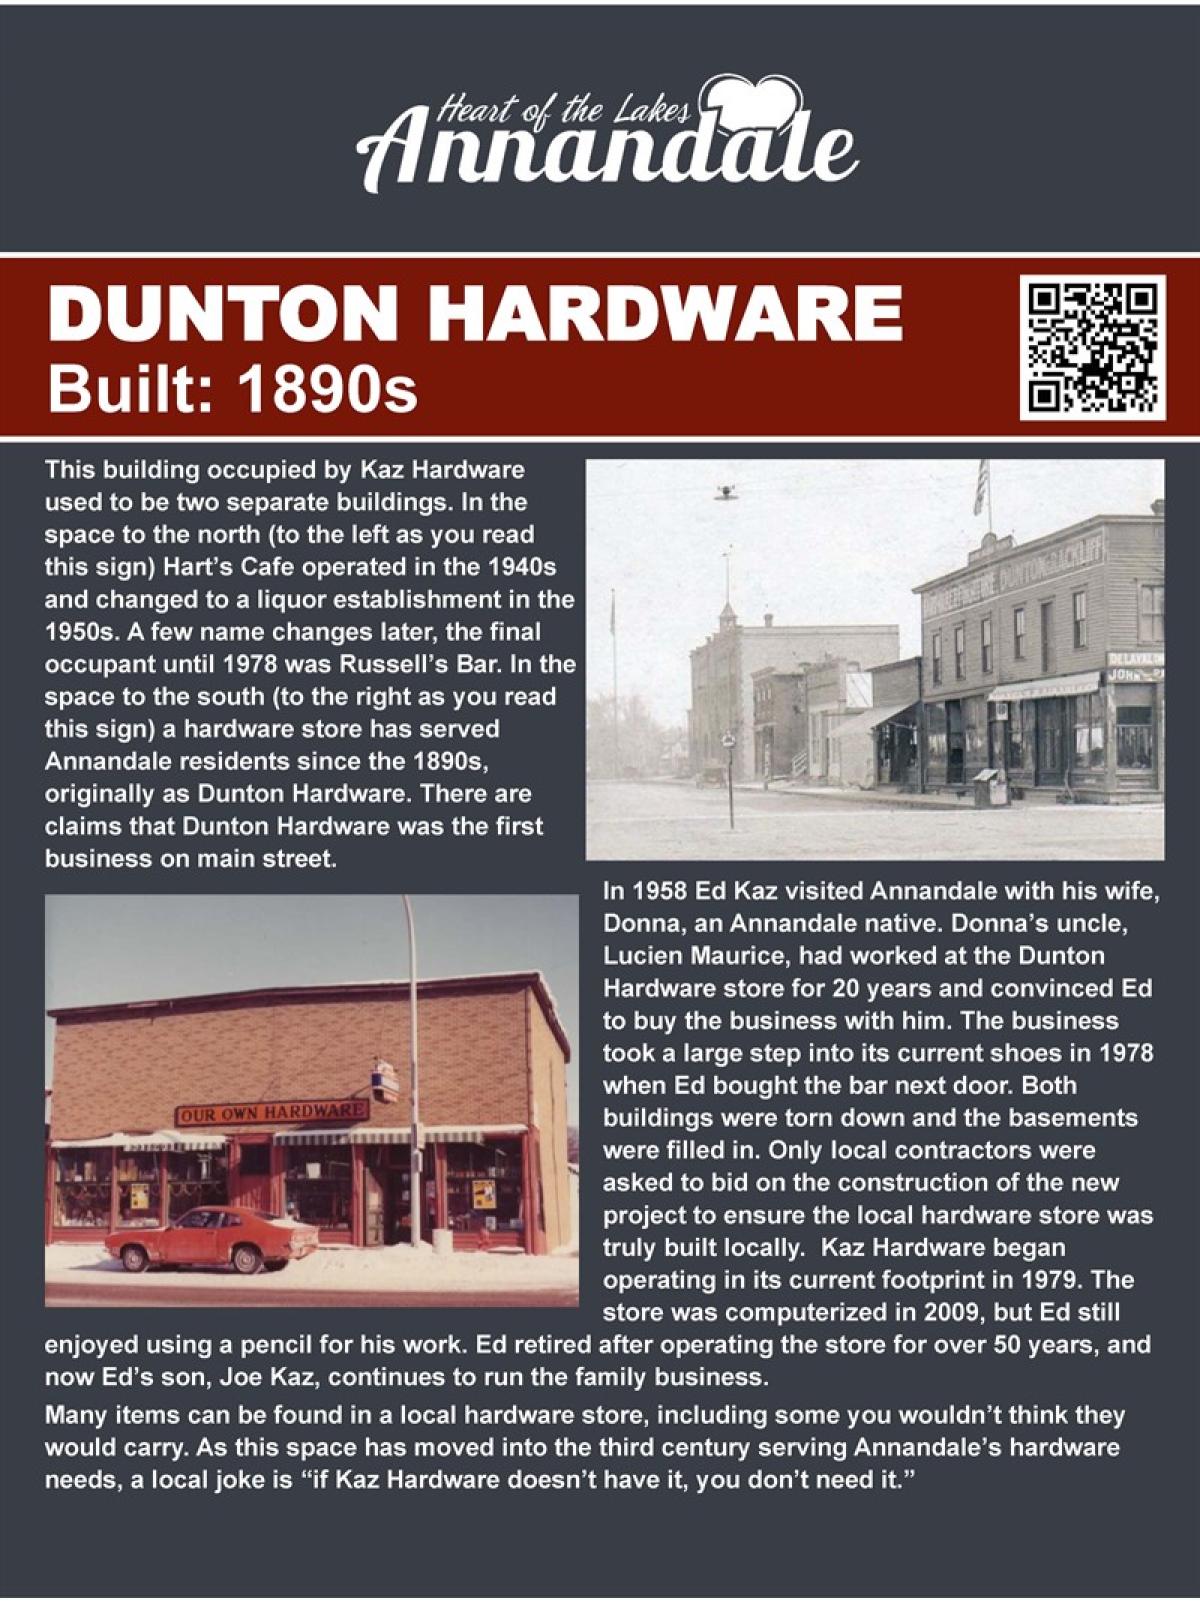 Dunton Hardware walking tour information